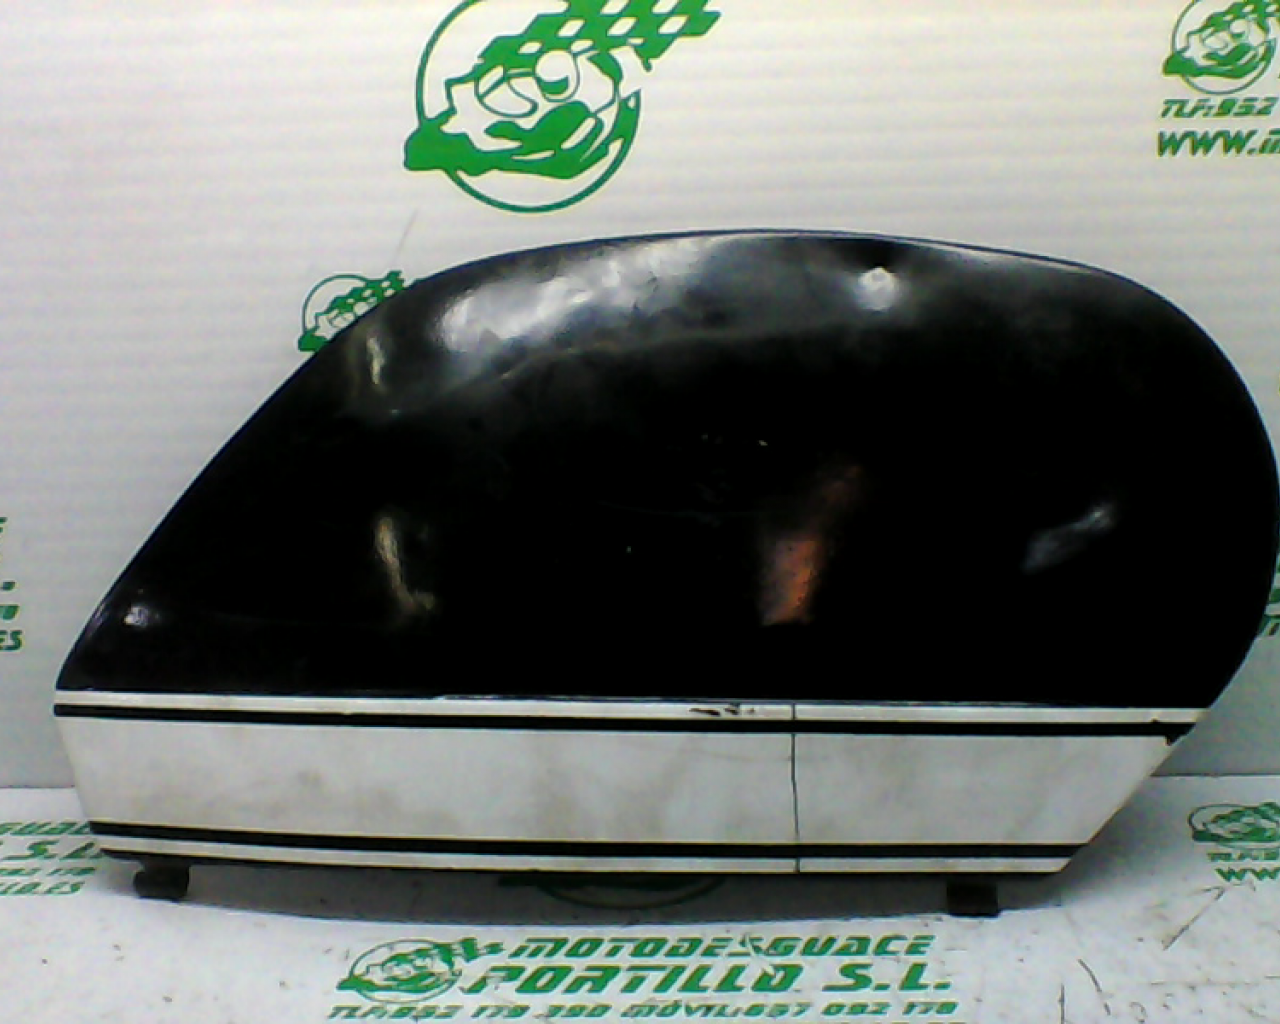 Carcasa lateral derecha Vespa FL 125 (1990-1992)